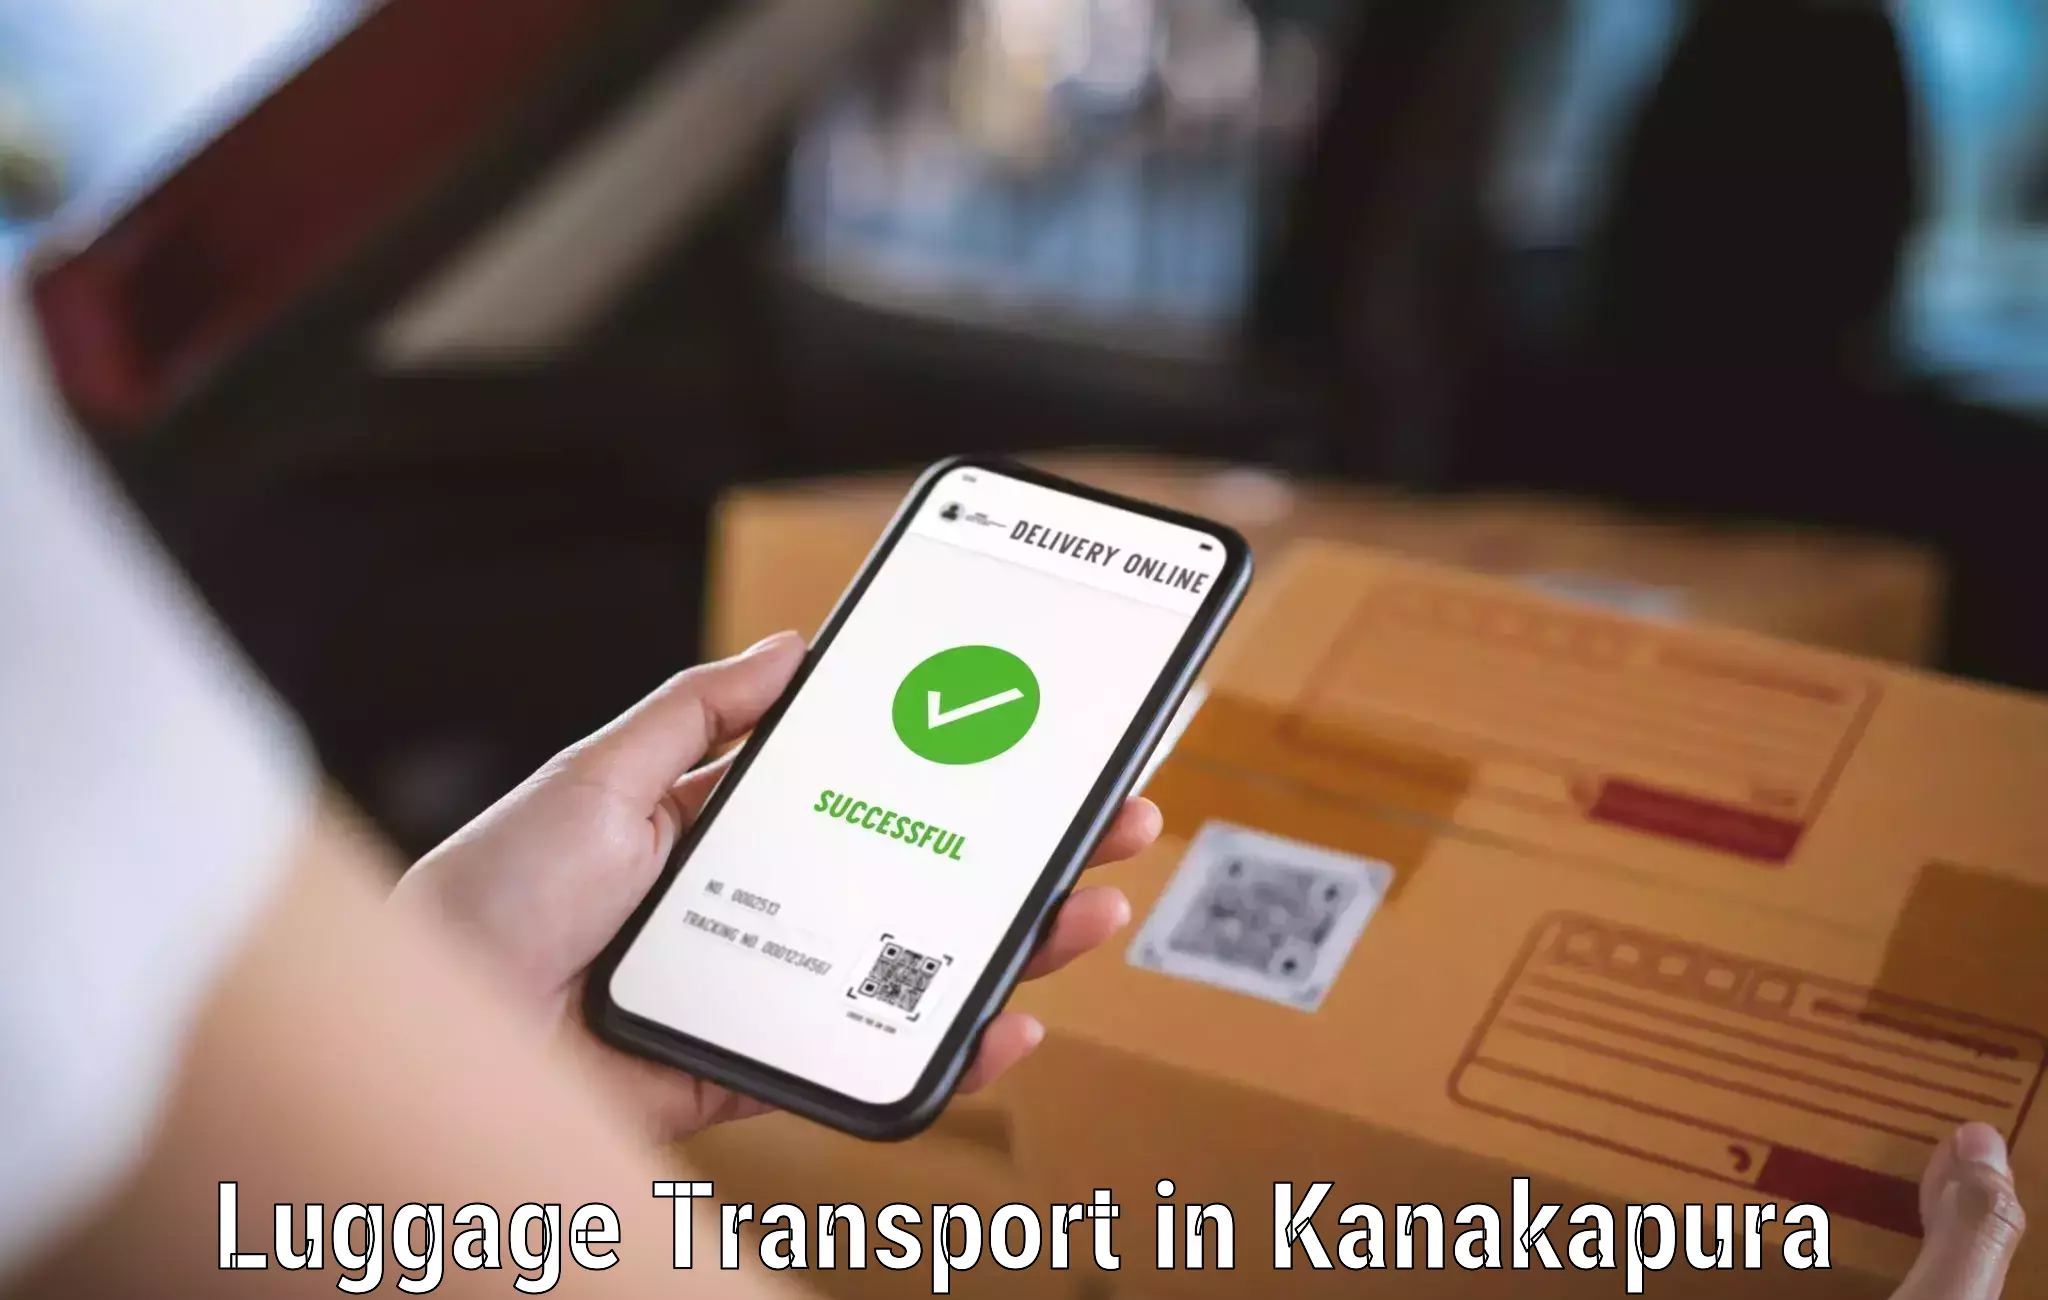 Luggage shipment strategy in Kanakapura